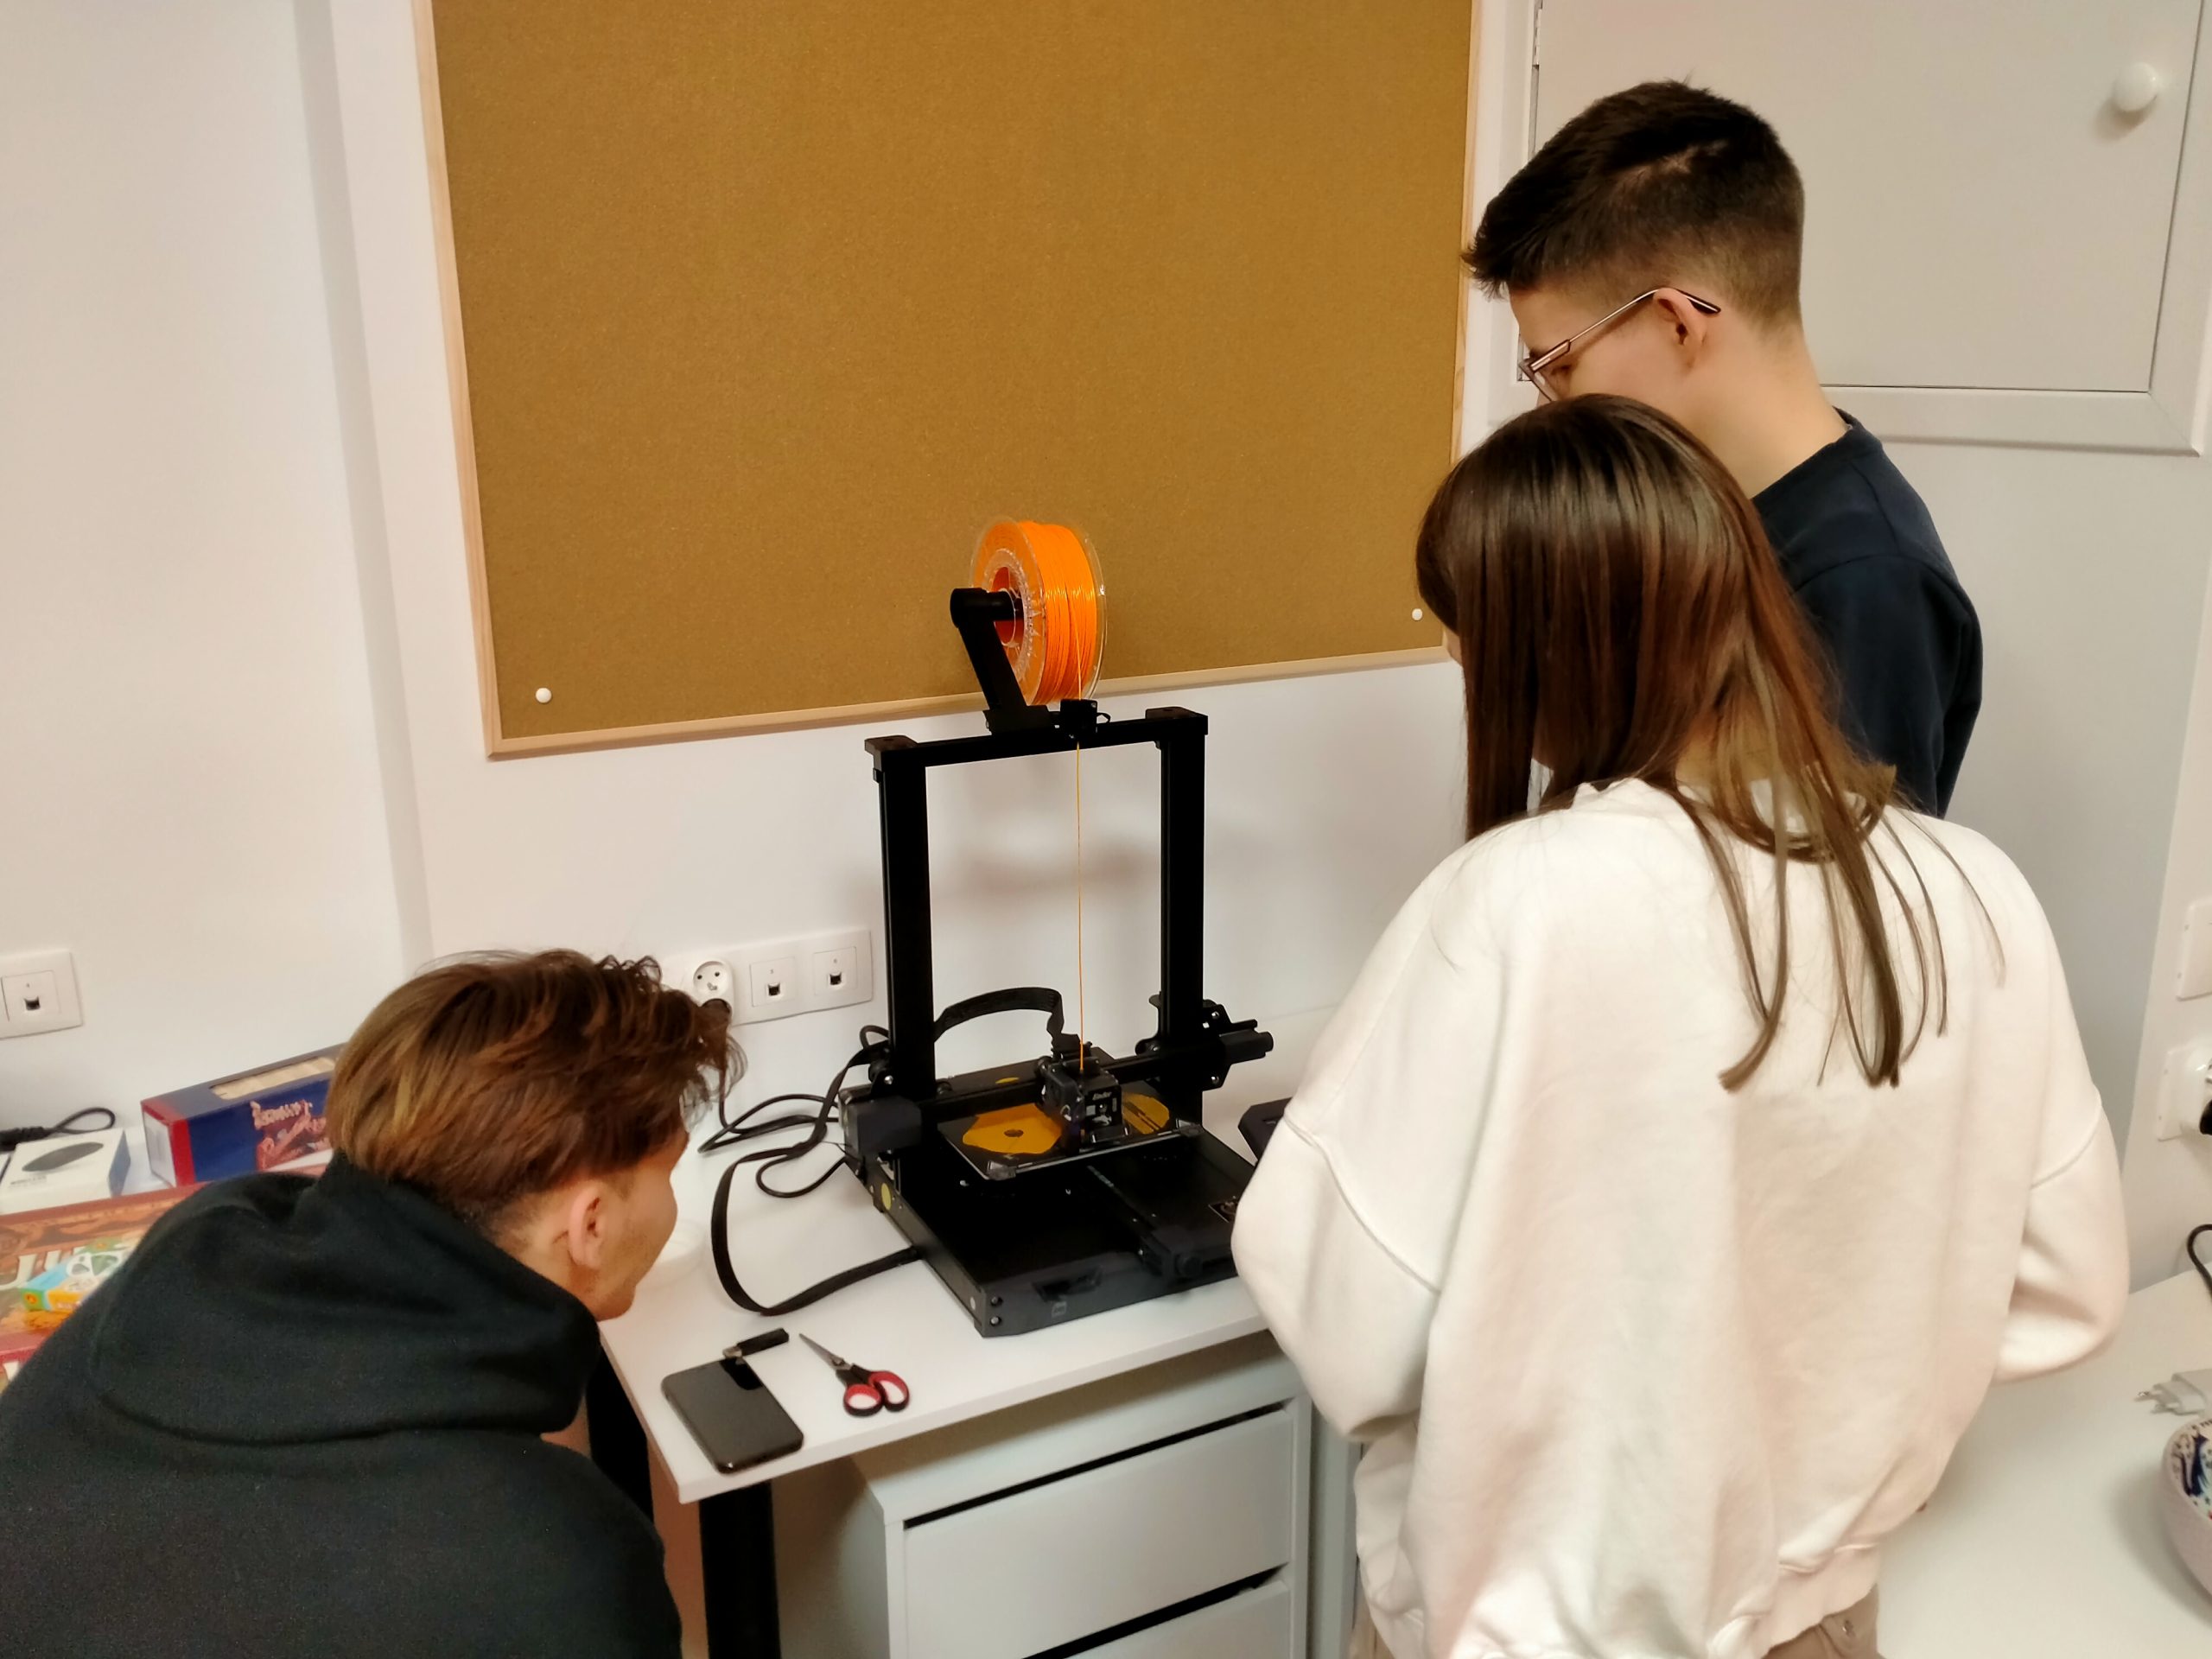 Trzy osoby obserwujące pracę drukarki 3D.